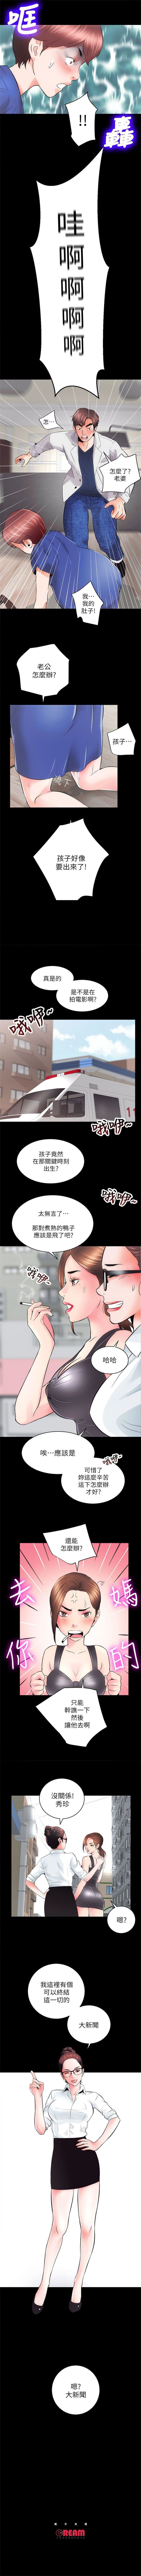 性溢房屋 1-20 中文翻译（应求更新中） page 26 full